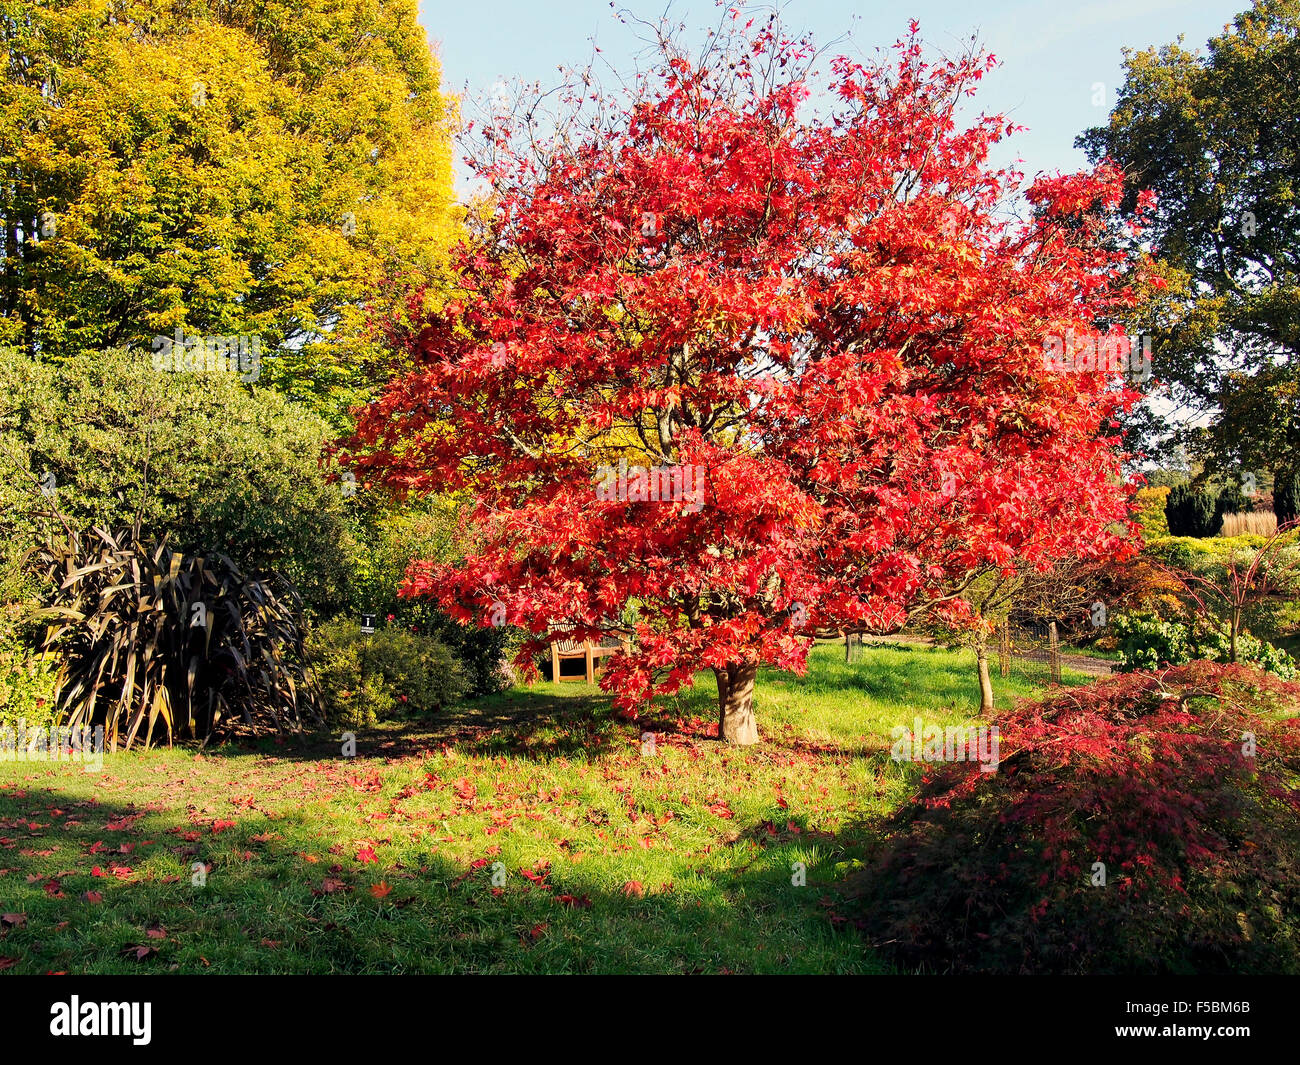 La couleur des feuilles d'automne vives d'un Acer palmatum 'atusumarae» Hilllier à Sir Harold Gardens, Hampshire, Angleterre. Banque D'Images